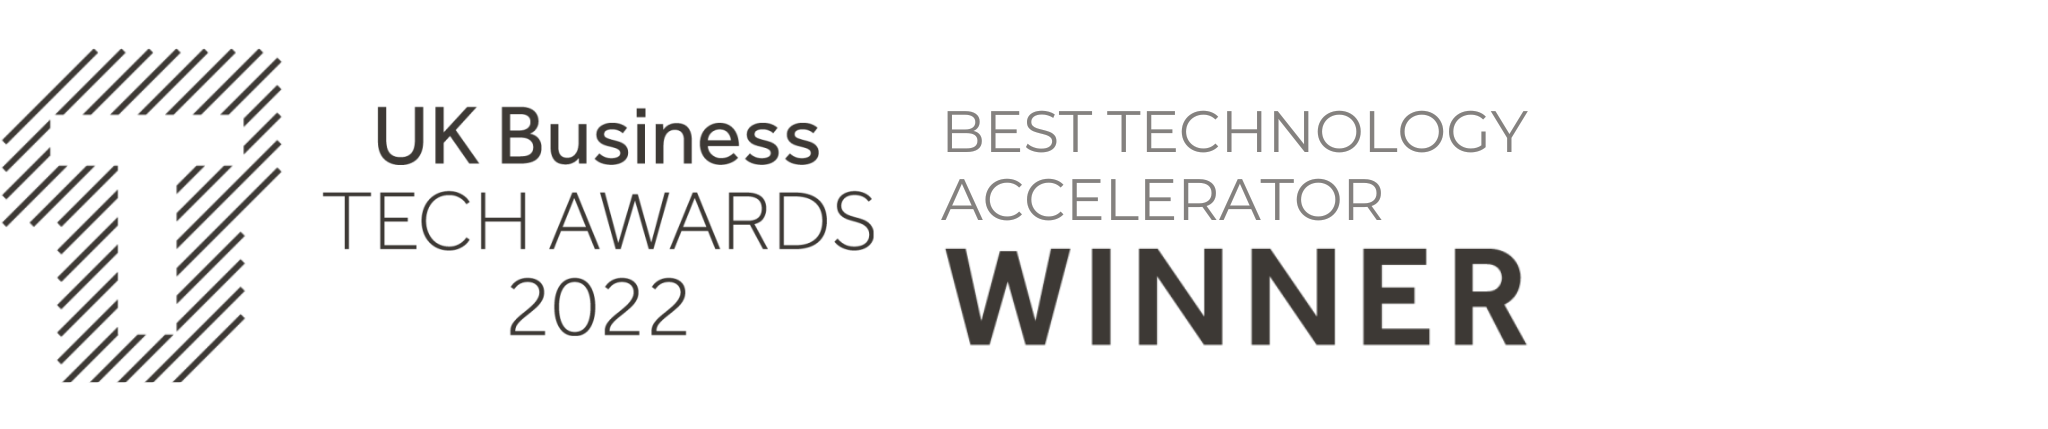 UK Business Tech Awards 2022 Best Technology Accelerator Award Winner